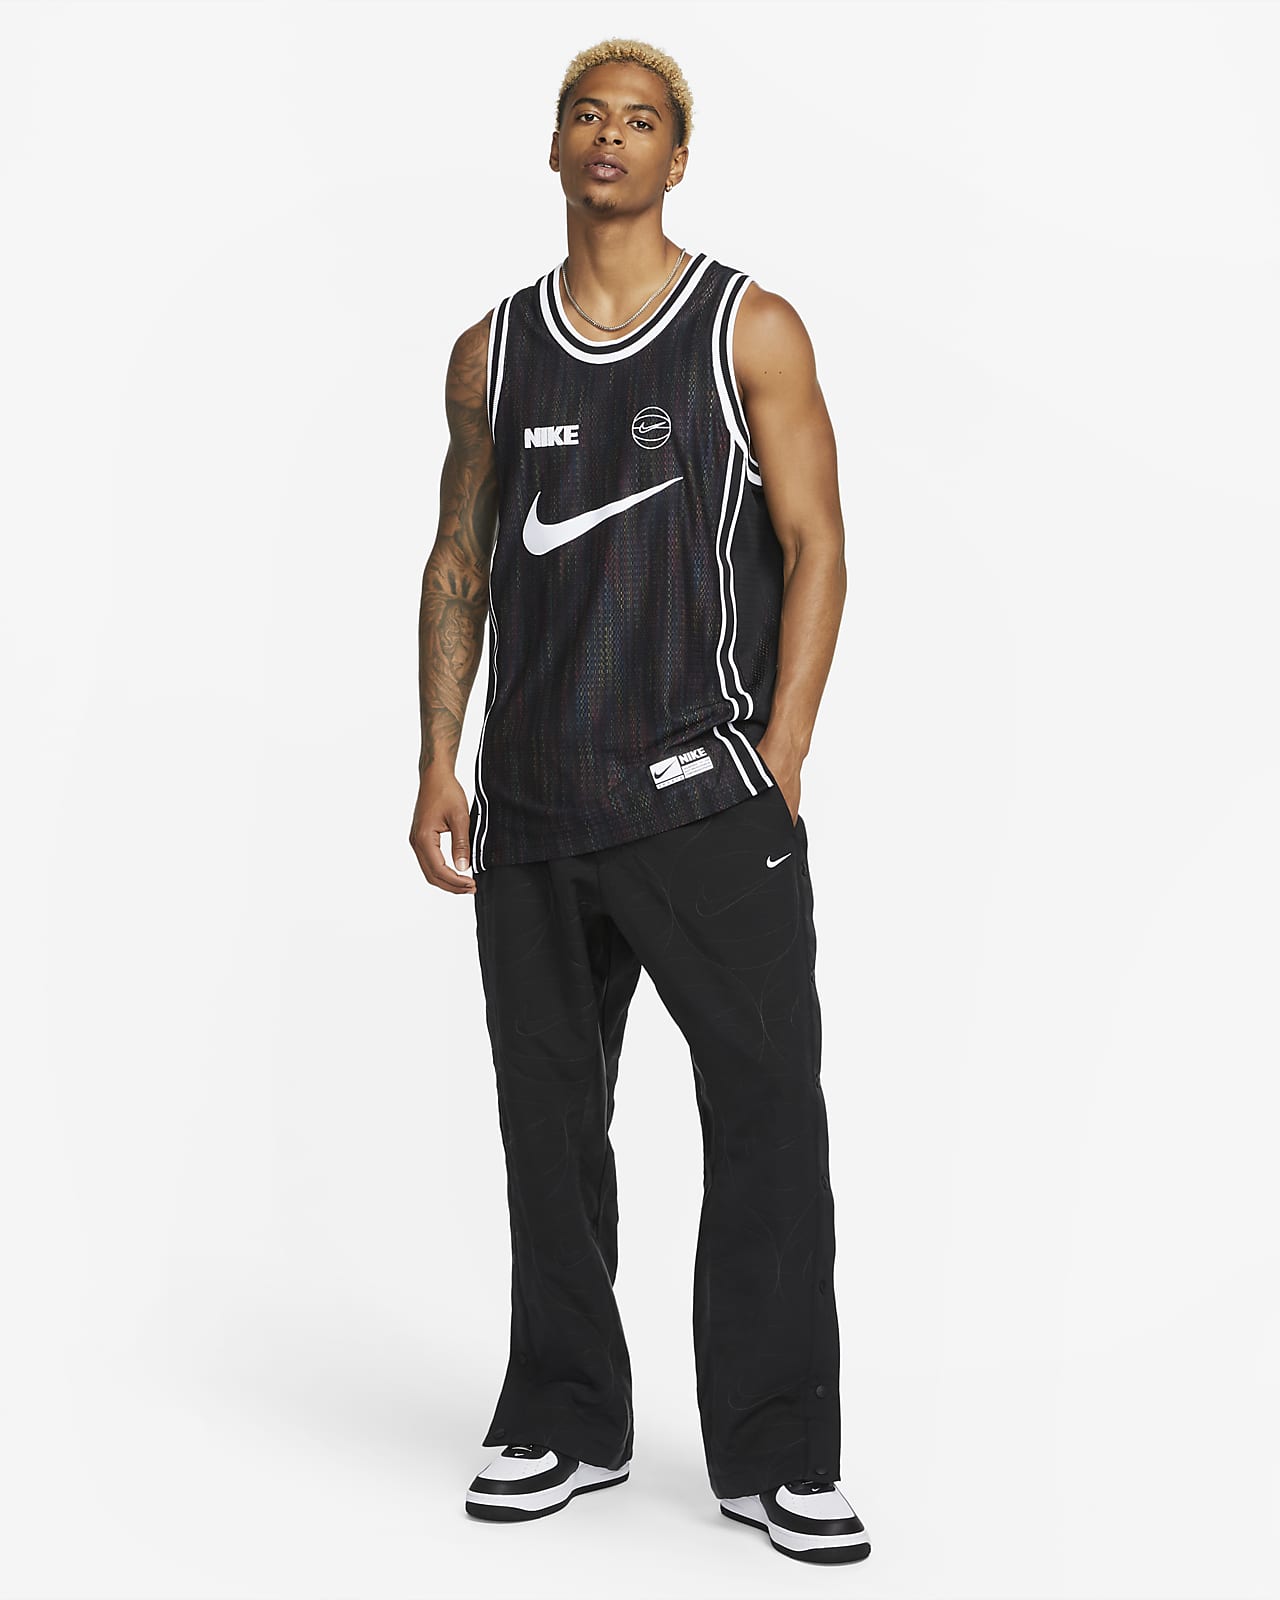 Nike Dri-FIT Men's Basketball Top